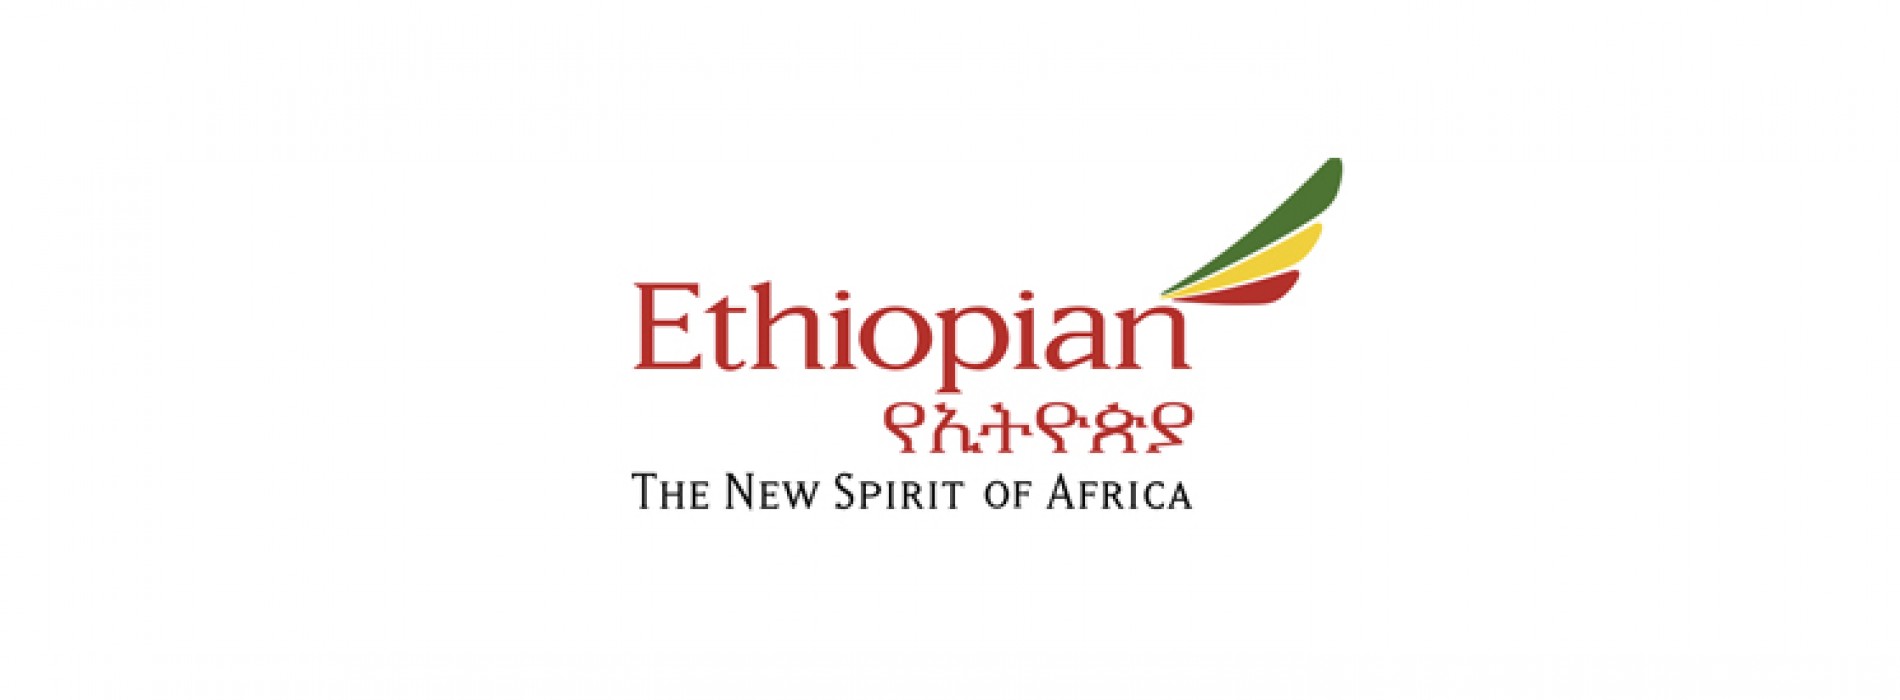 Ethiopian to augment flight frequency to Guangzhou